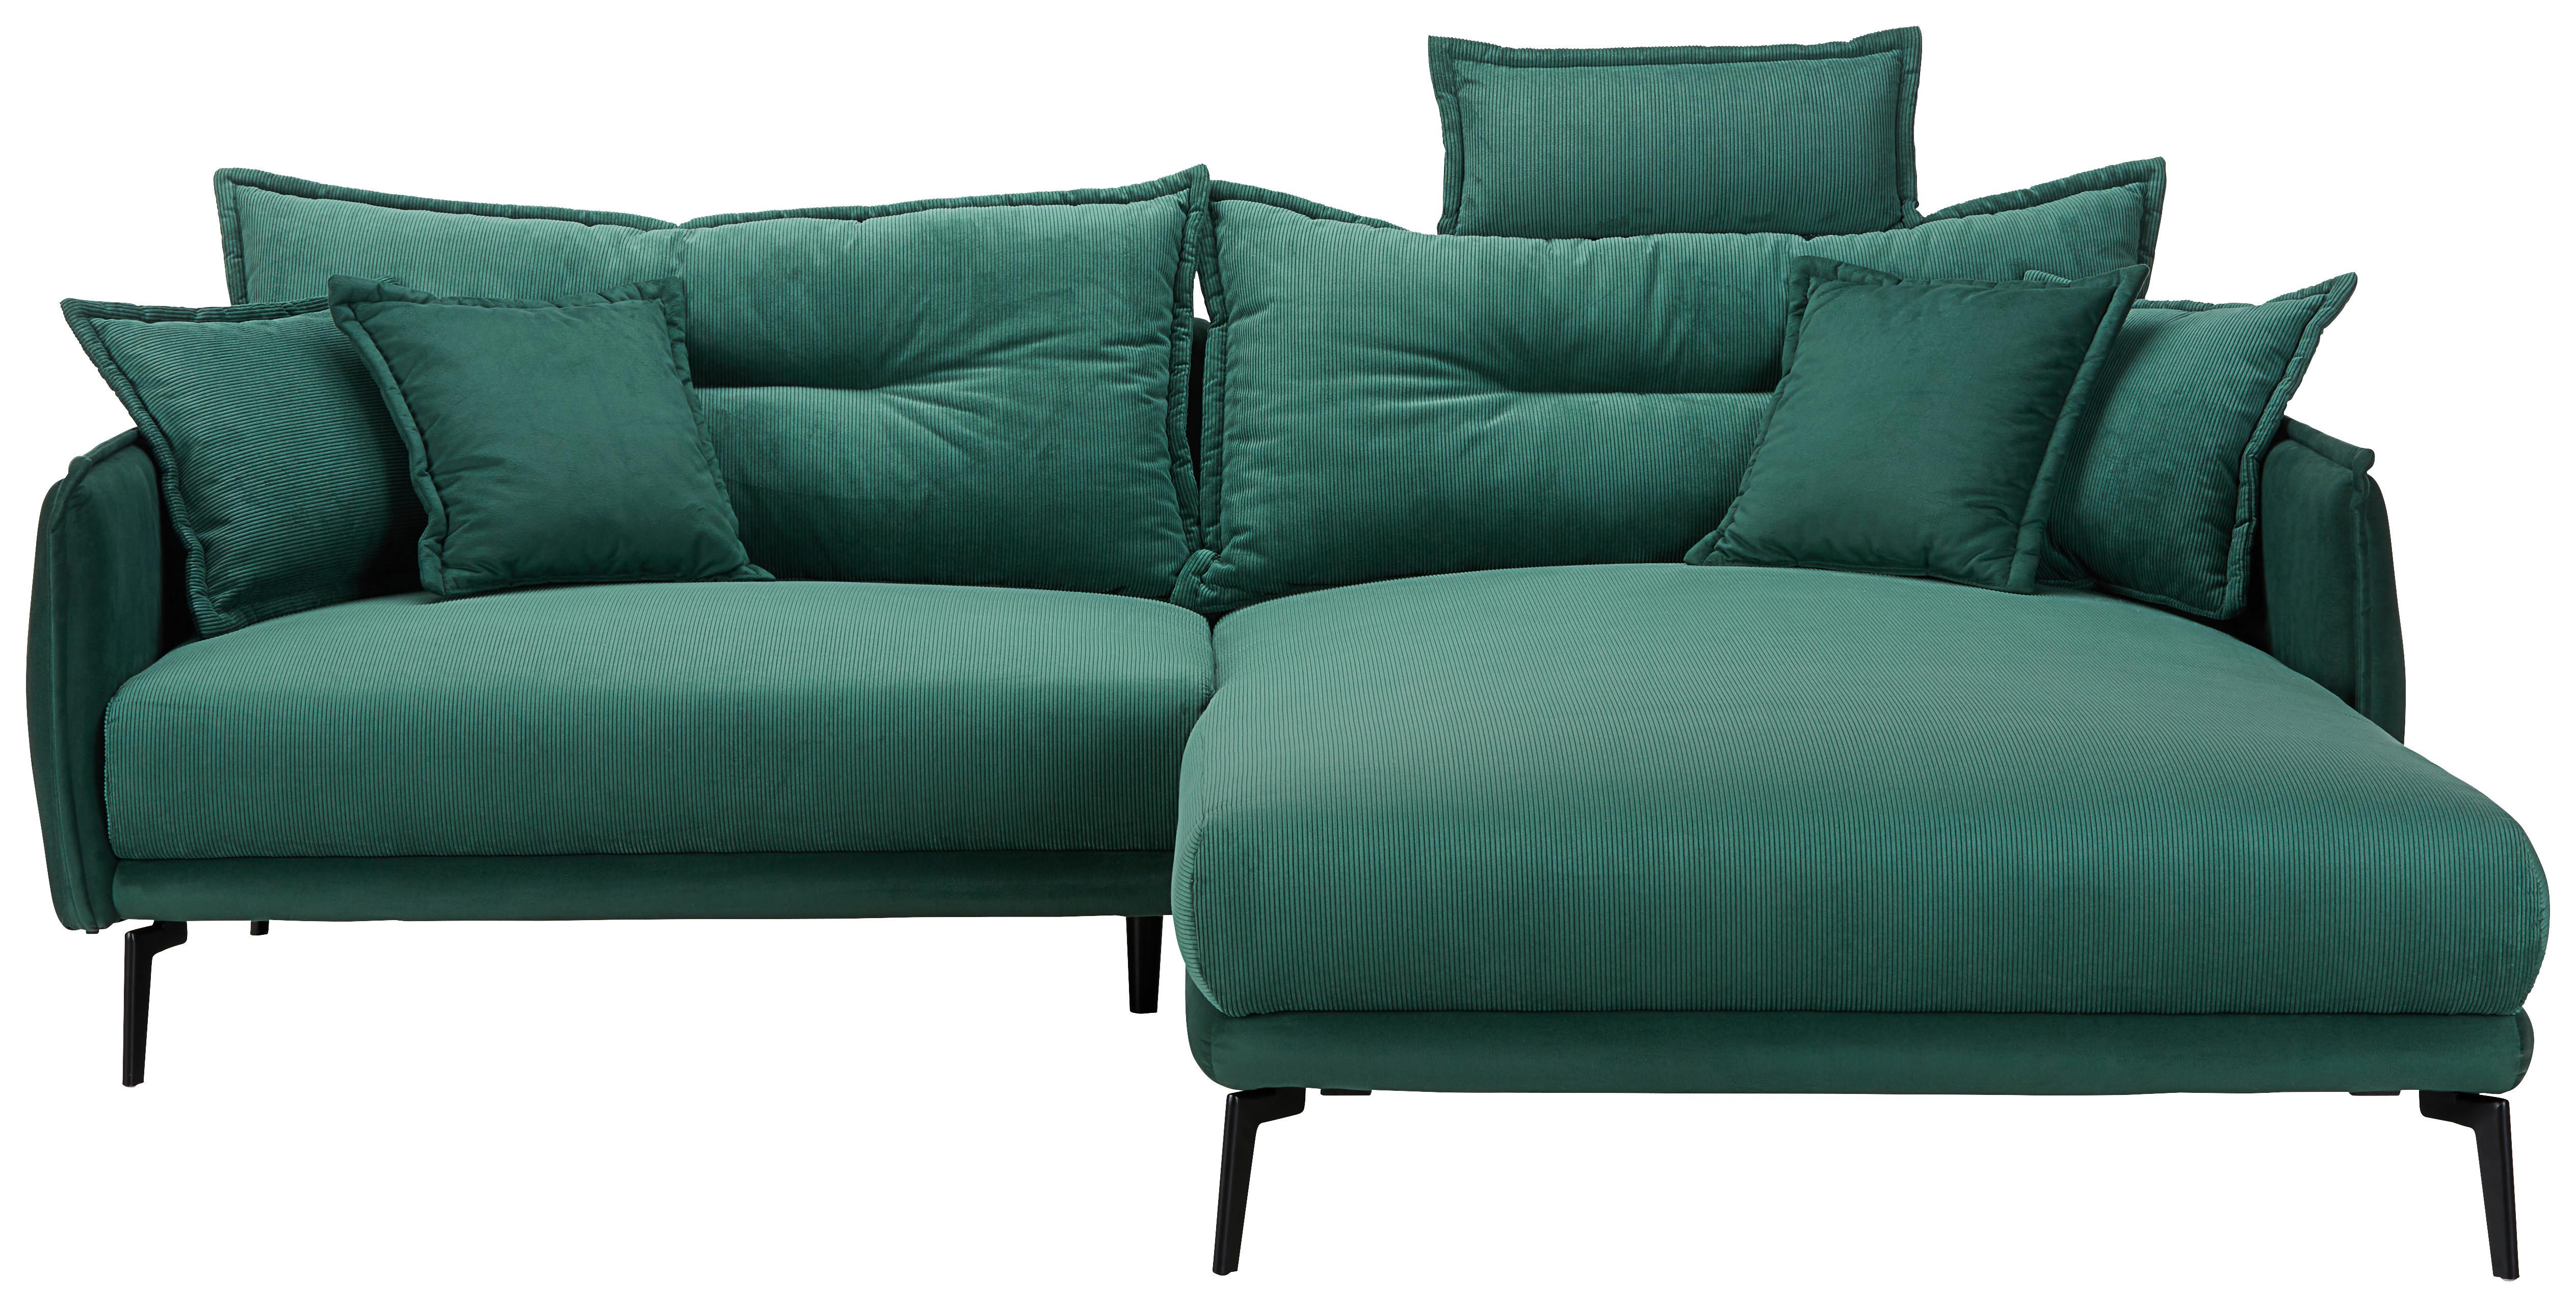 Sedežna Garnitura Nuovo, Iz Žameta - črna/zelena, Moderno, kovina/tekstil (247/106/192cm) - Top ponudba